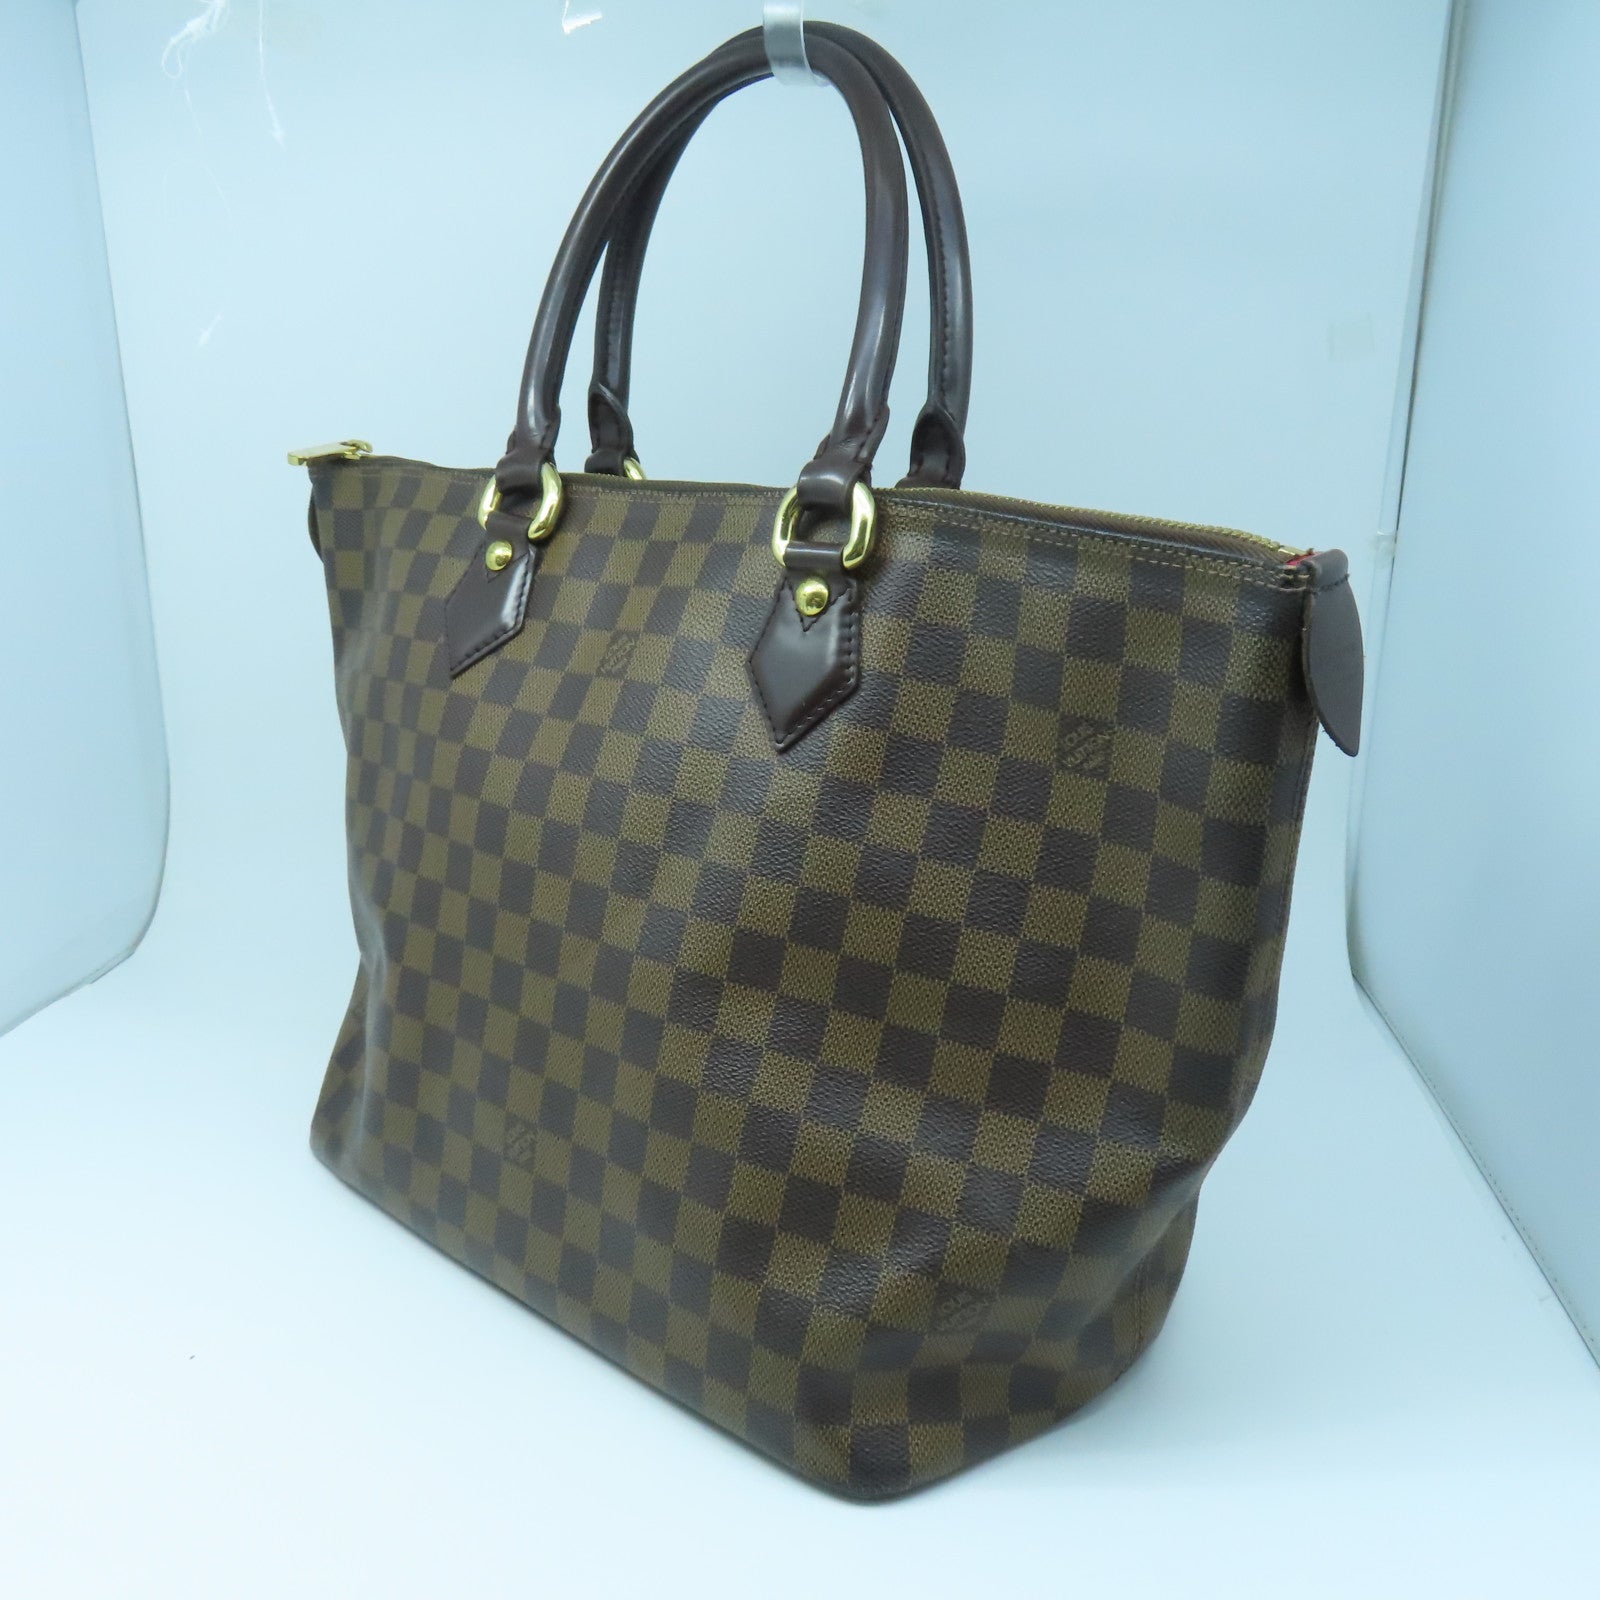 Shop for Louis Vuitton Damier Azur Canvas Leather Saleya MM Bag